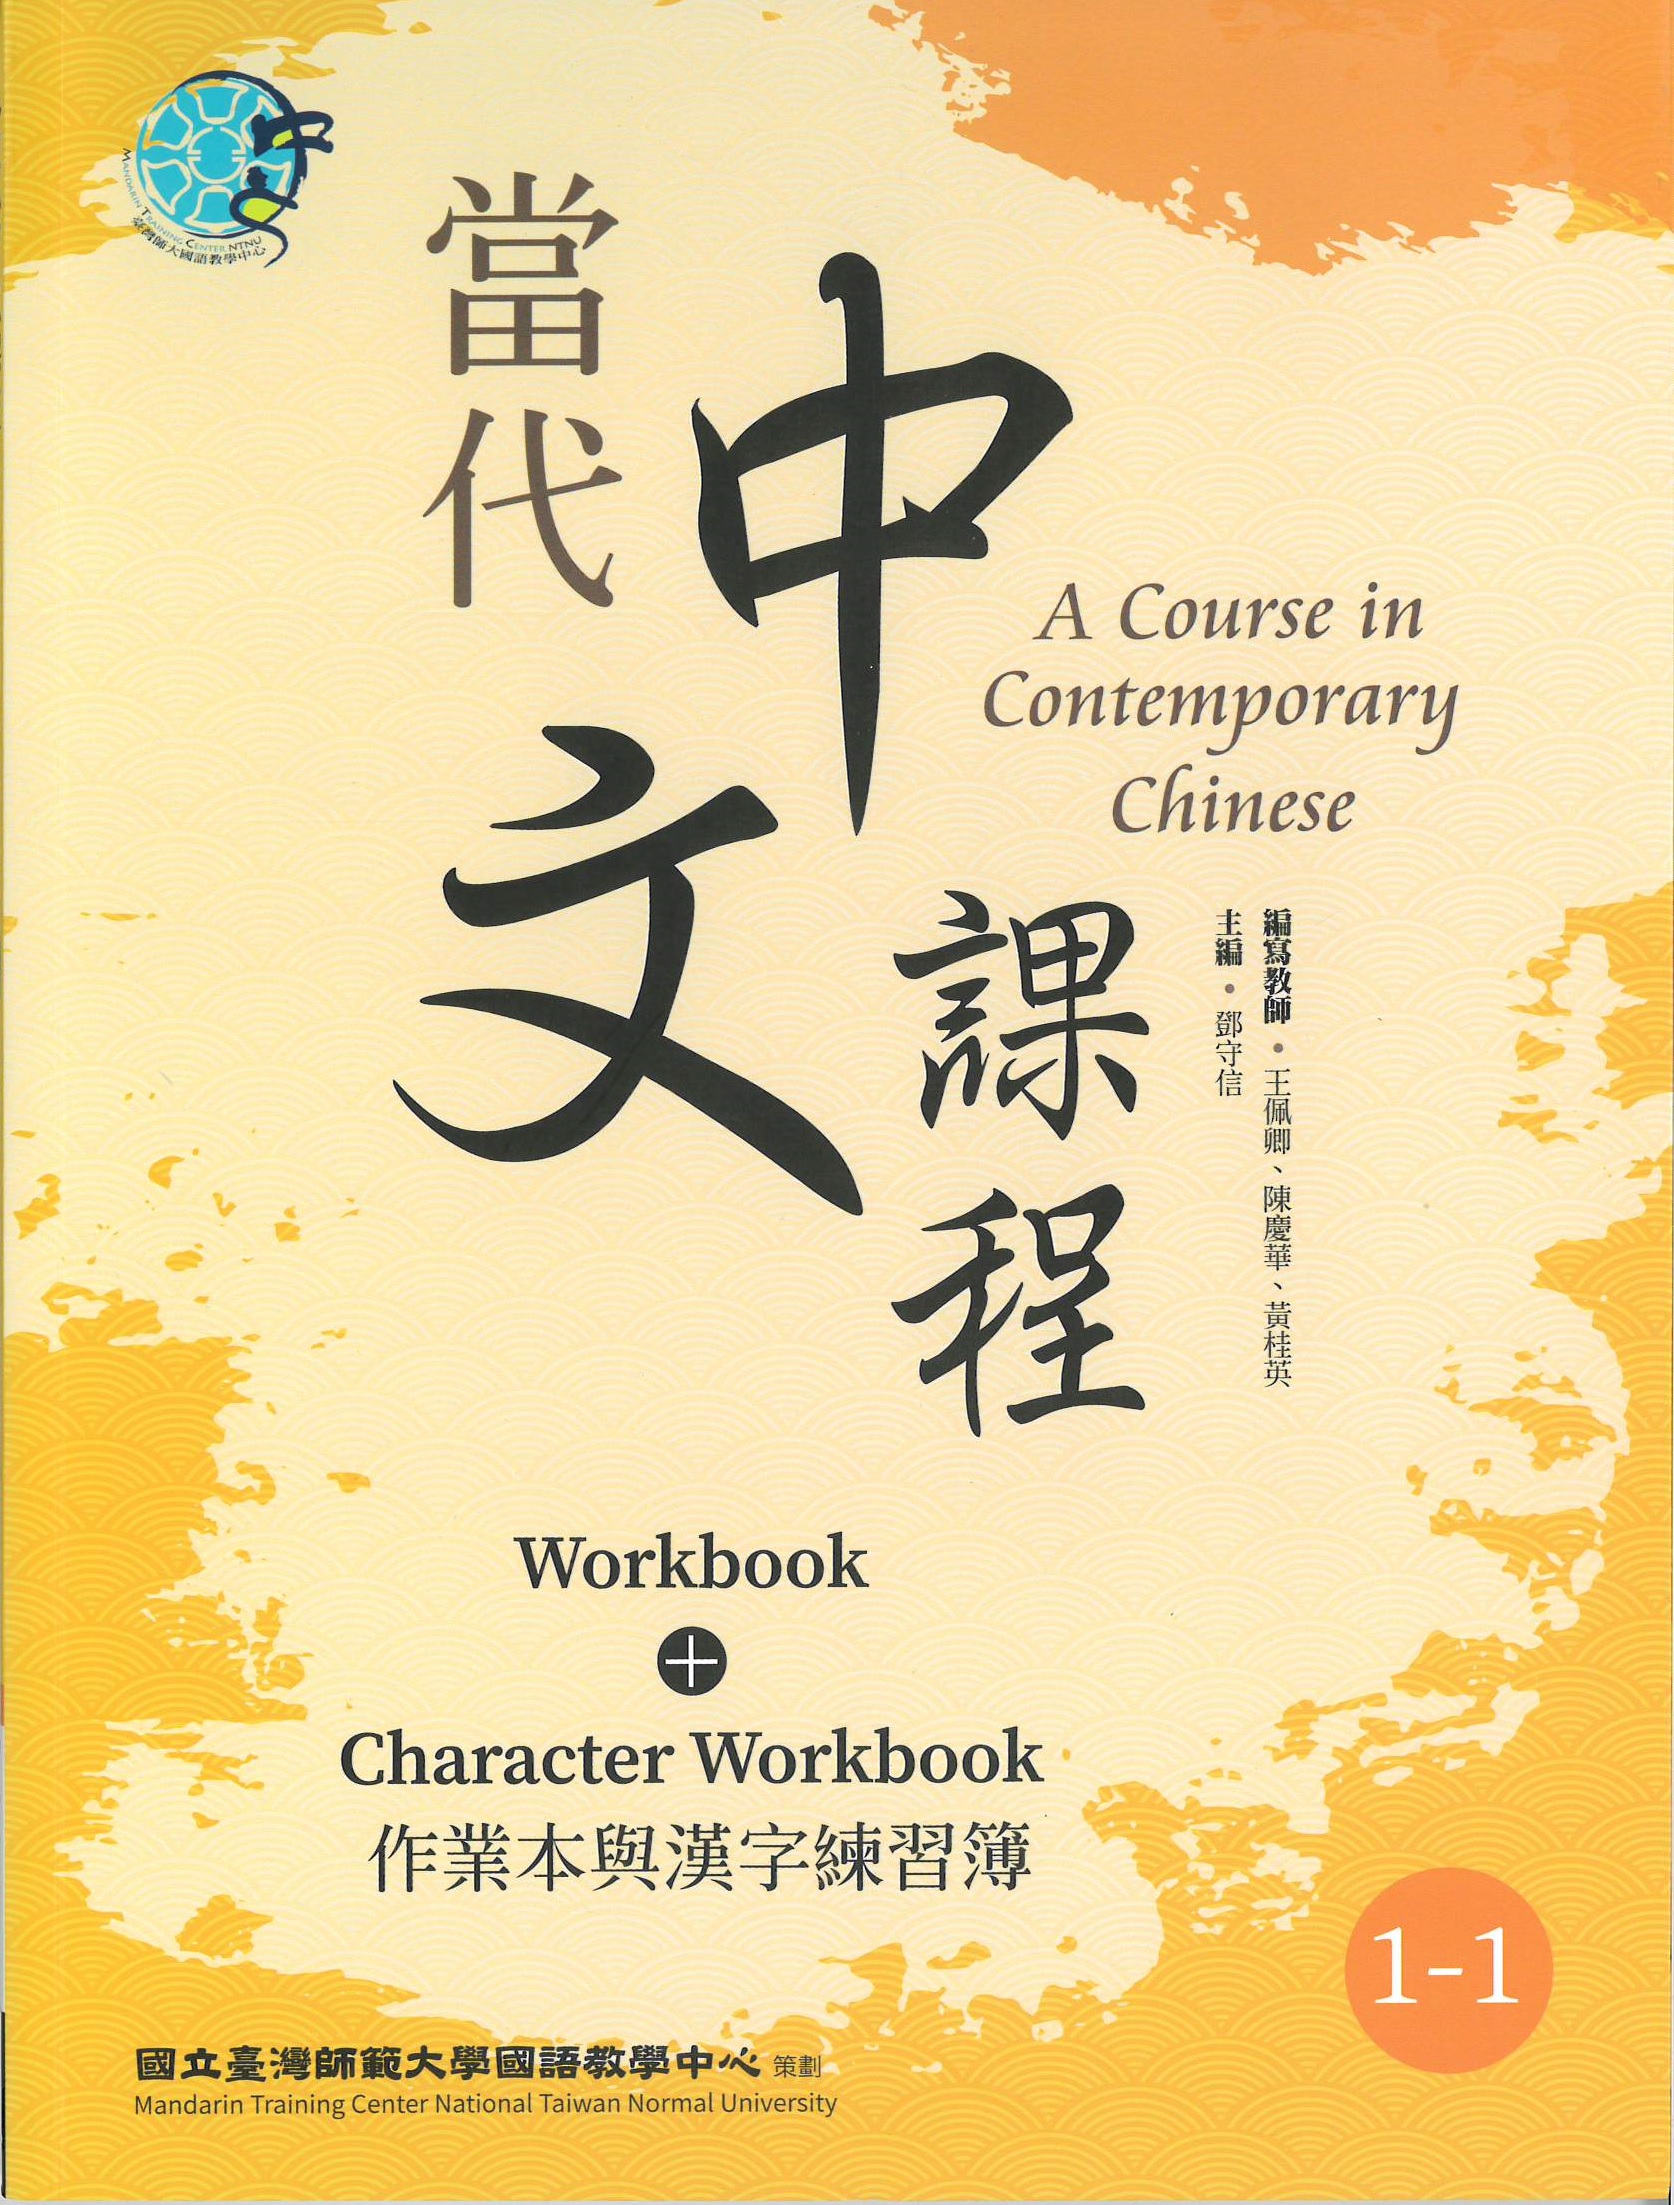 當代中文課程(1-1) : 作業本與漢字練習簿(二版) = A course in contemporary Chinese : workbook+character workbook.